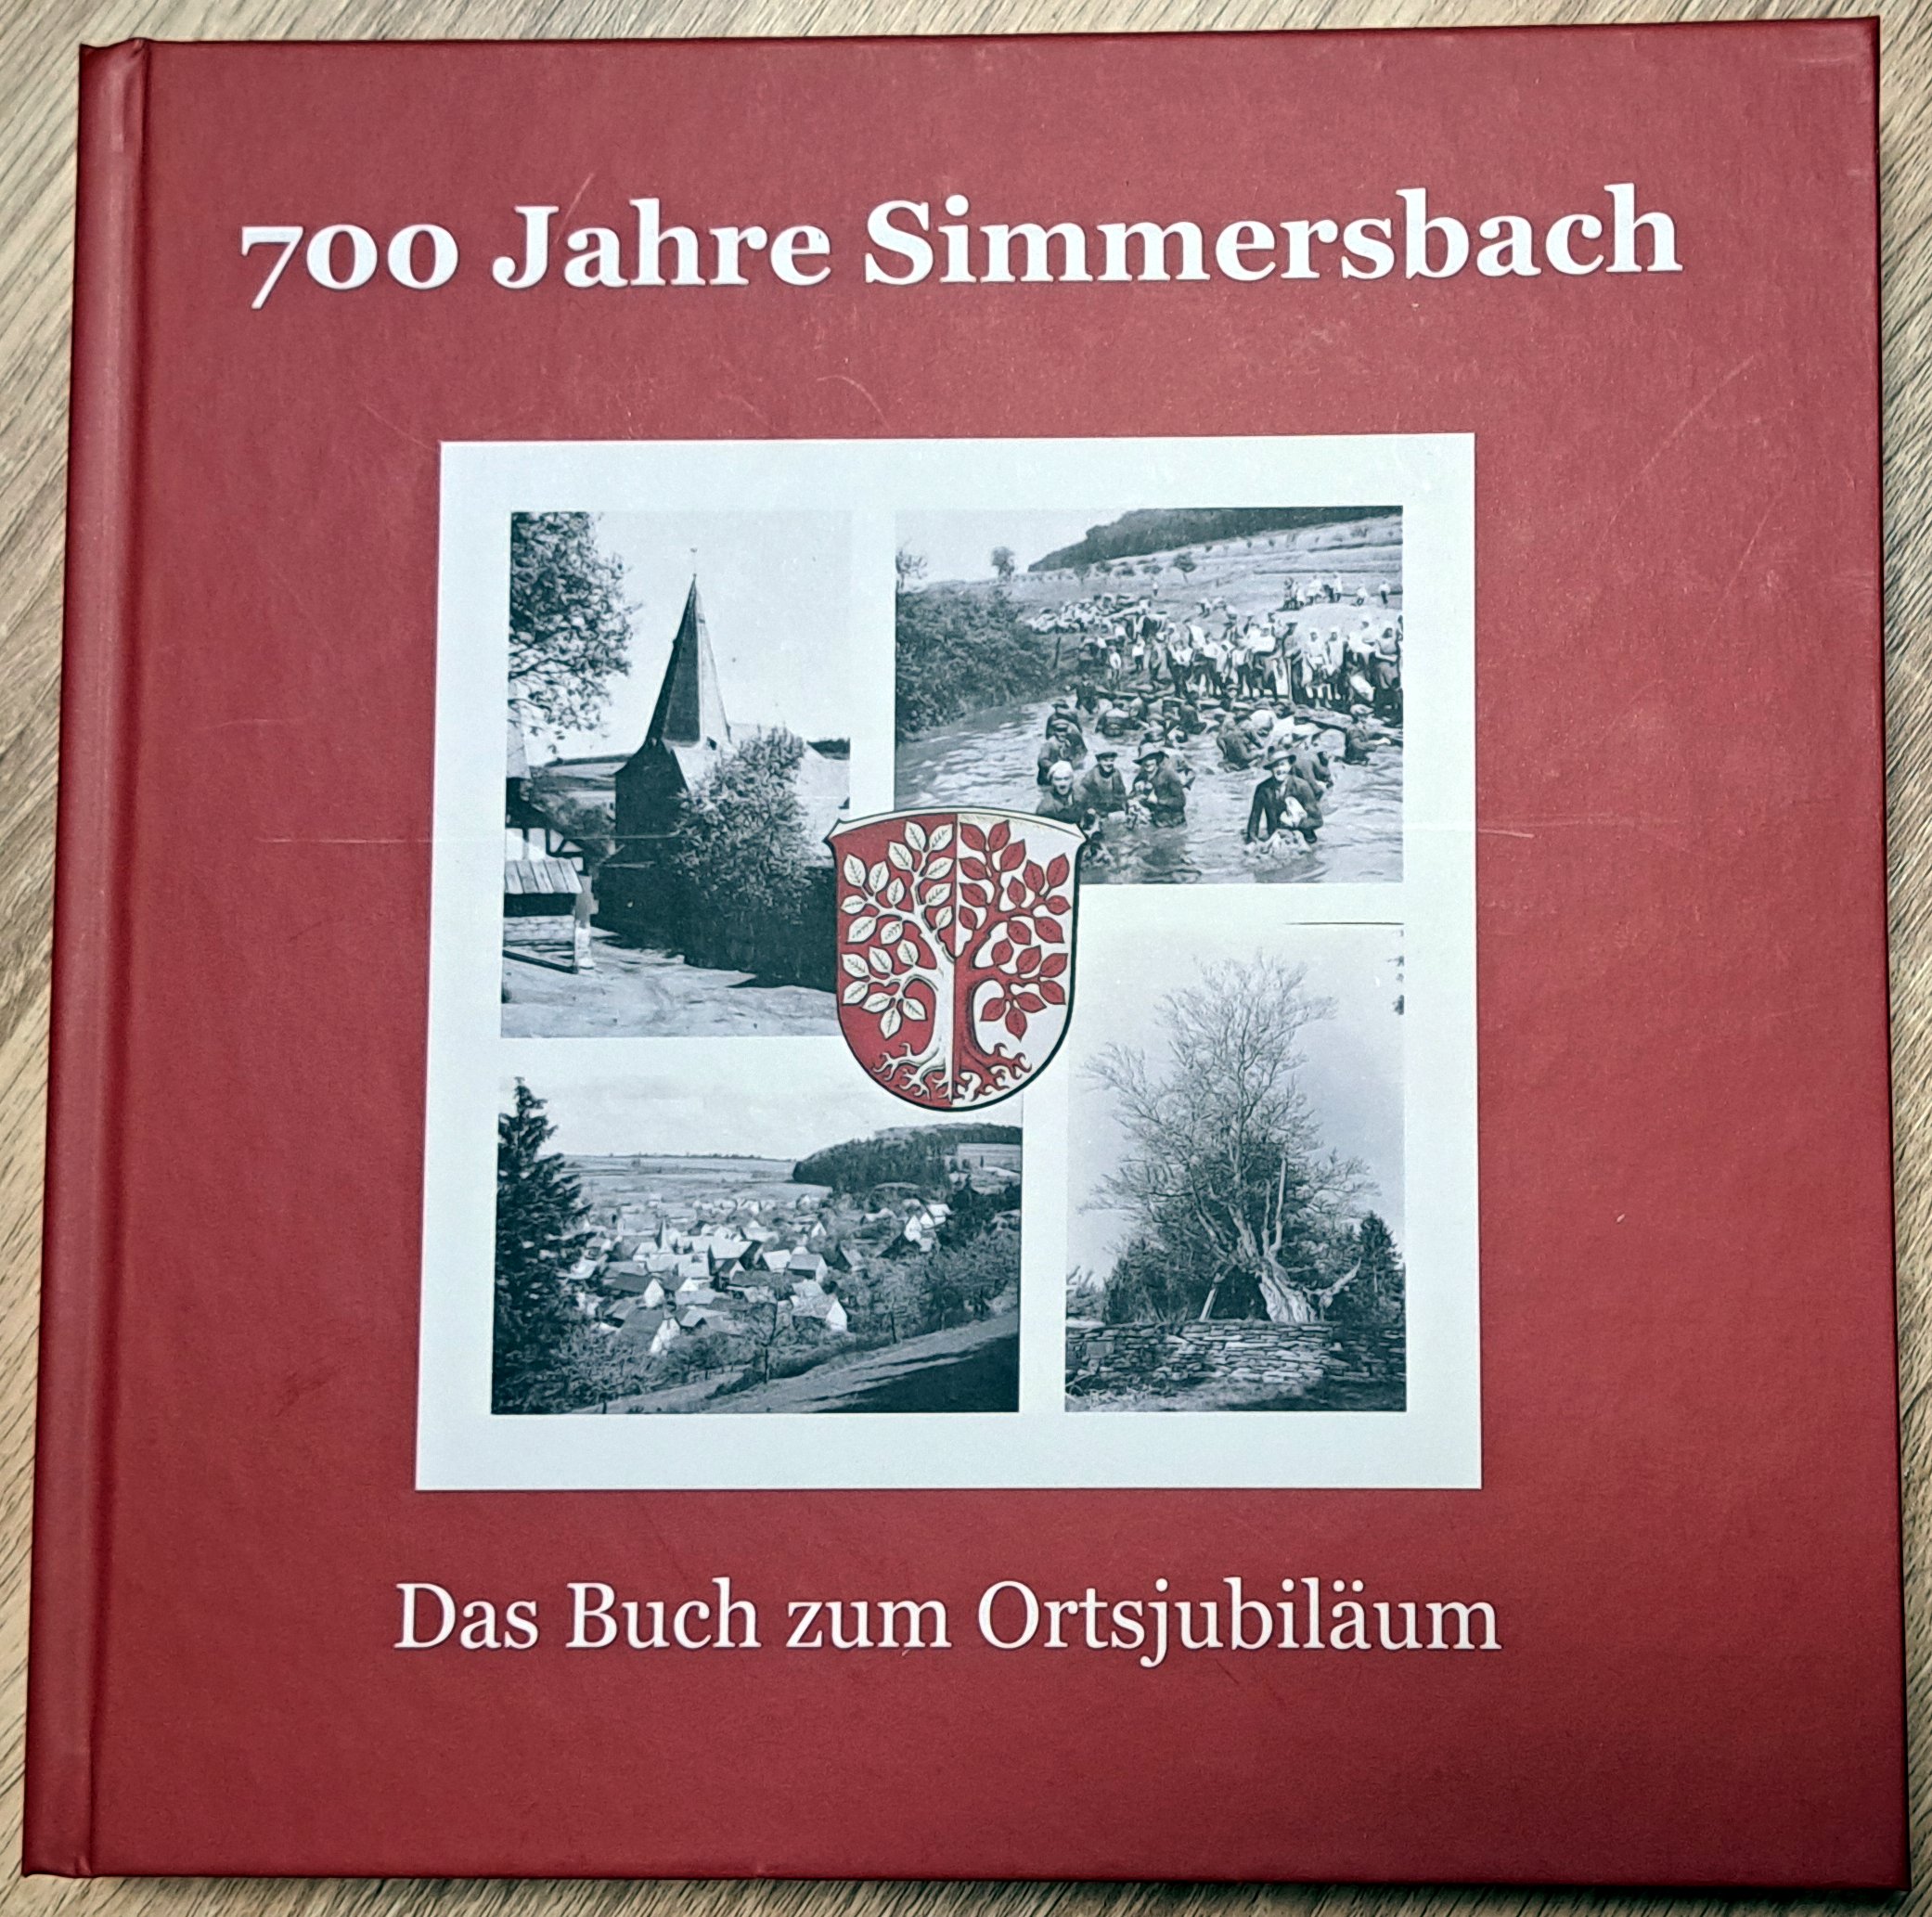 (c) Soemmaschbuch.de